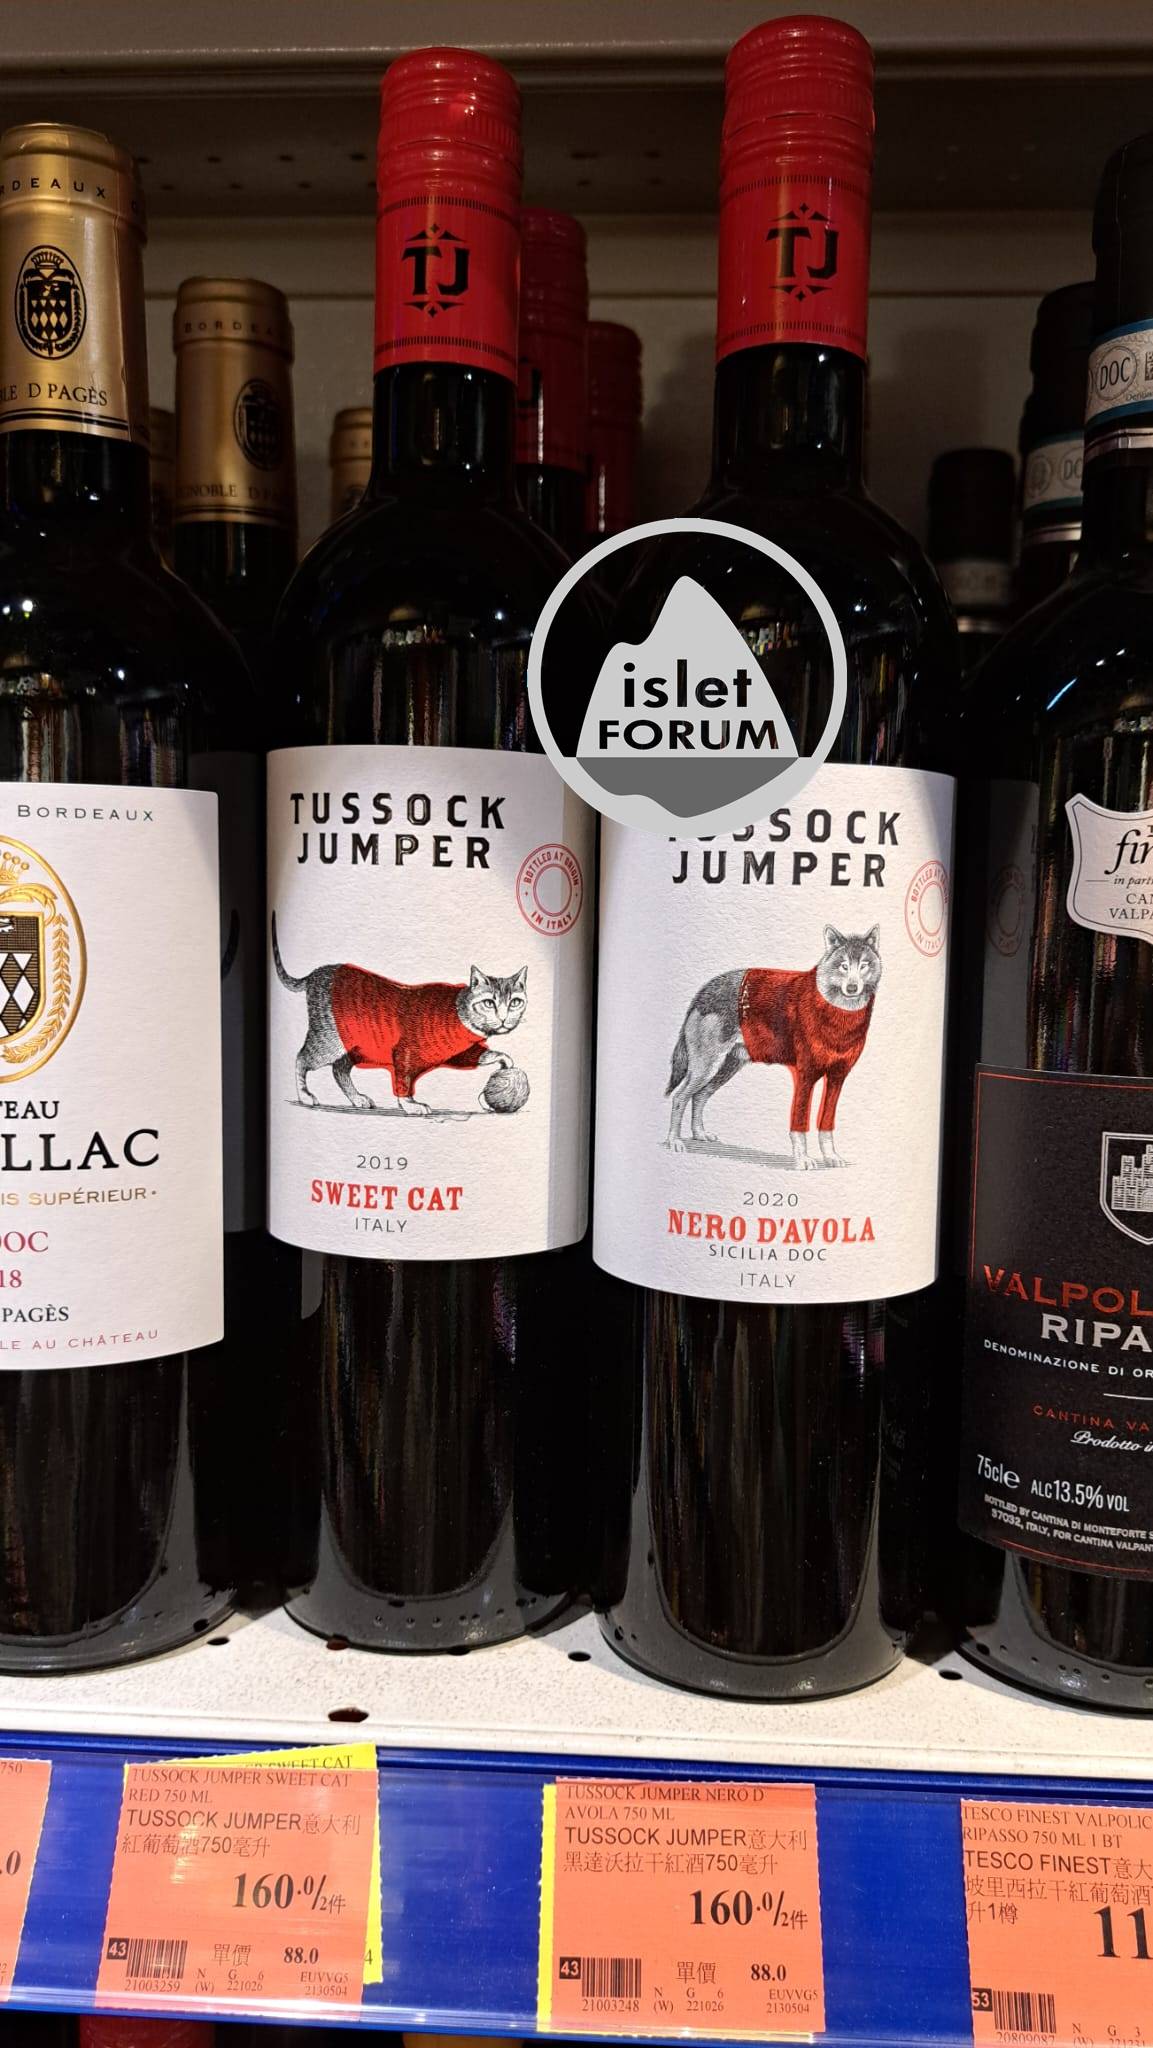 Tussock Jumper 是一個葡萄酒品牌 (2).jpeg